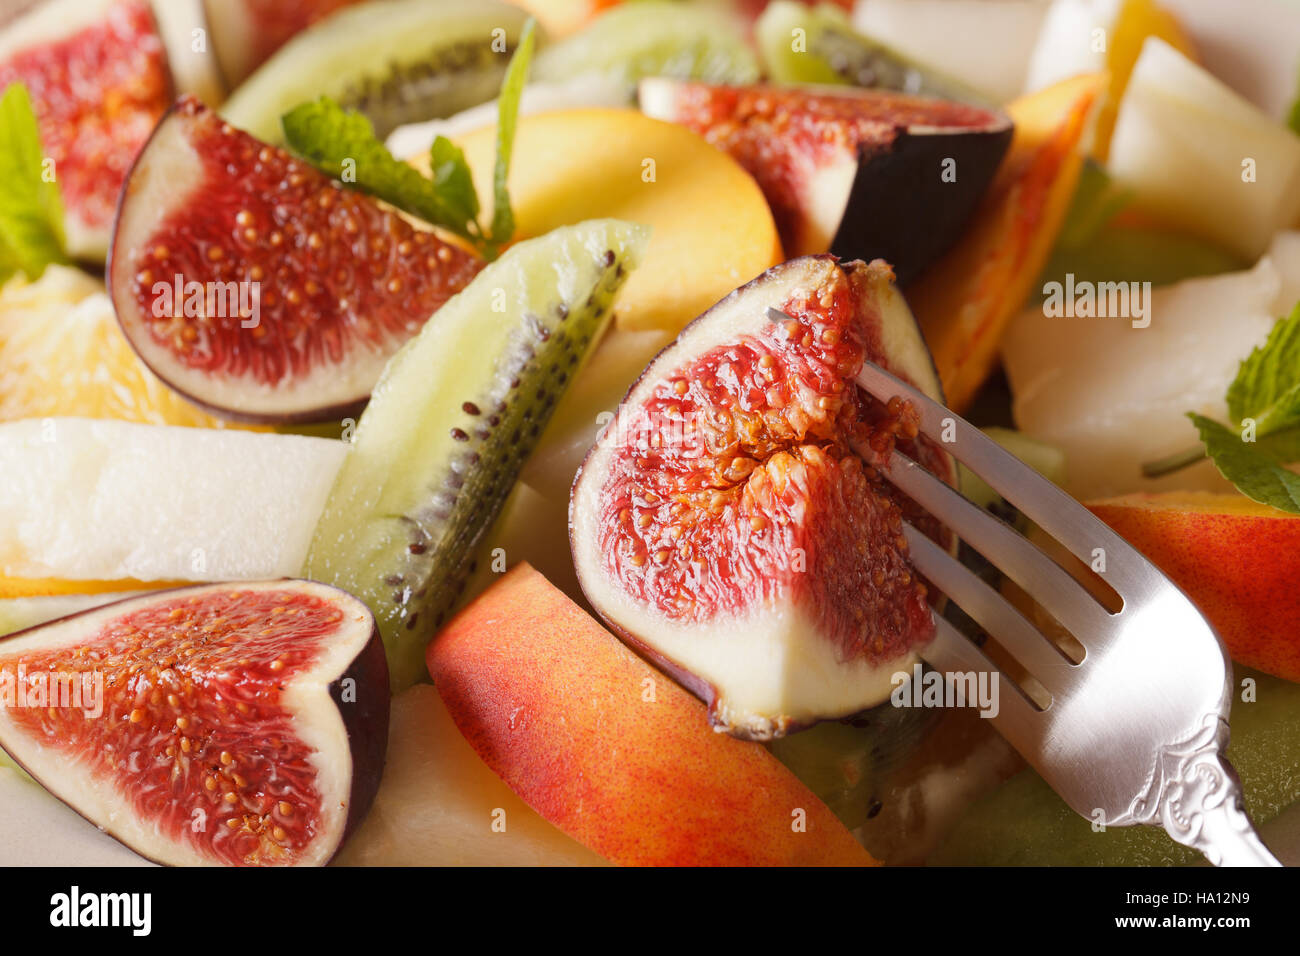 Background of fresh fruit salad with fig, peach, melon, kiwi and orange close-up. horizontal Stock Photo